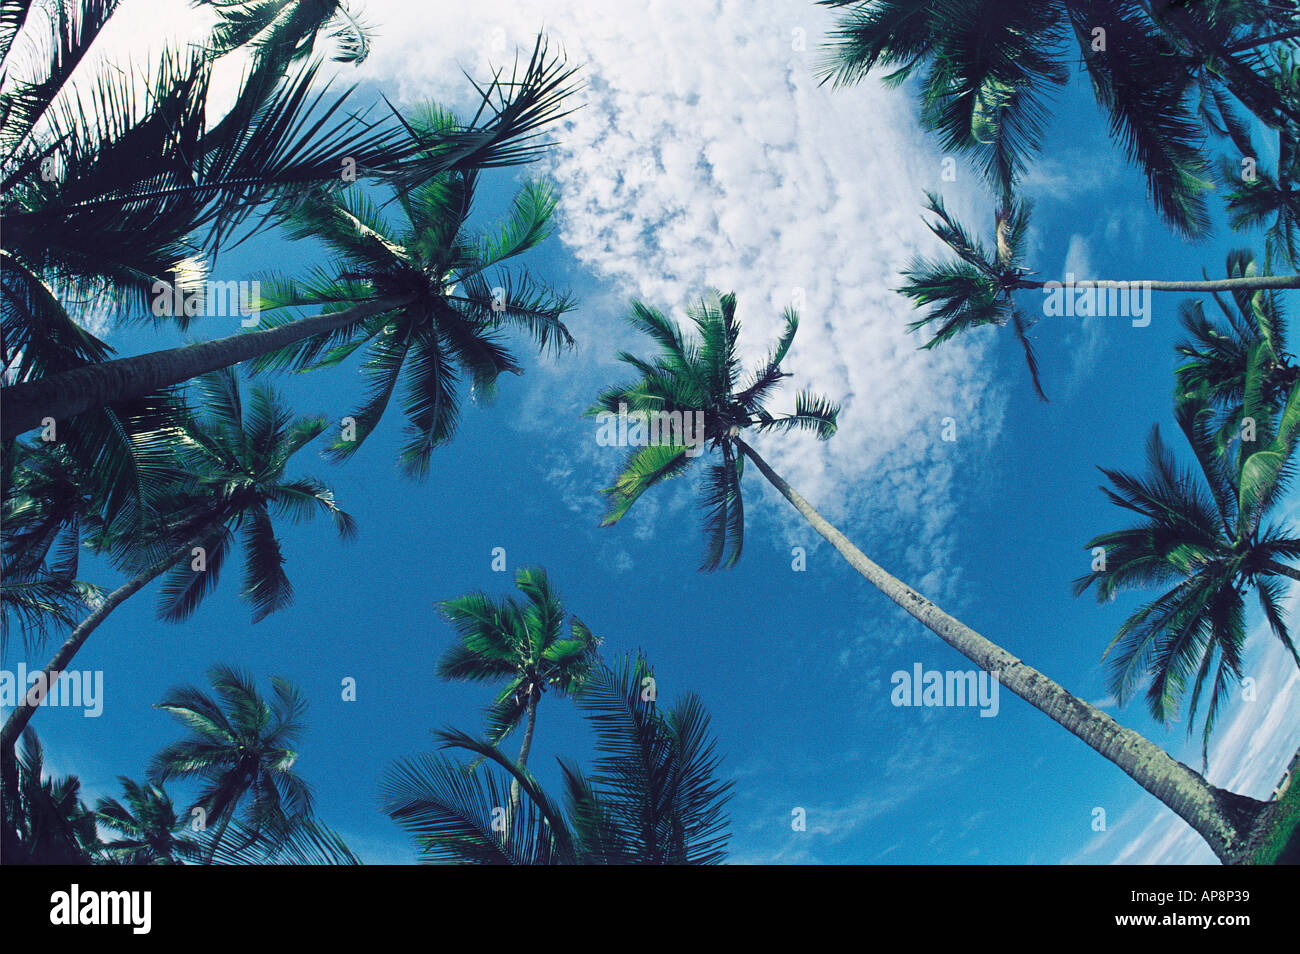 La sommità delle palme di cocco stagliano contro un cielo blu con nuvole bianche costa del Kenya Africa orientale Foto Stock